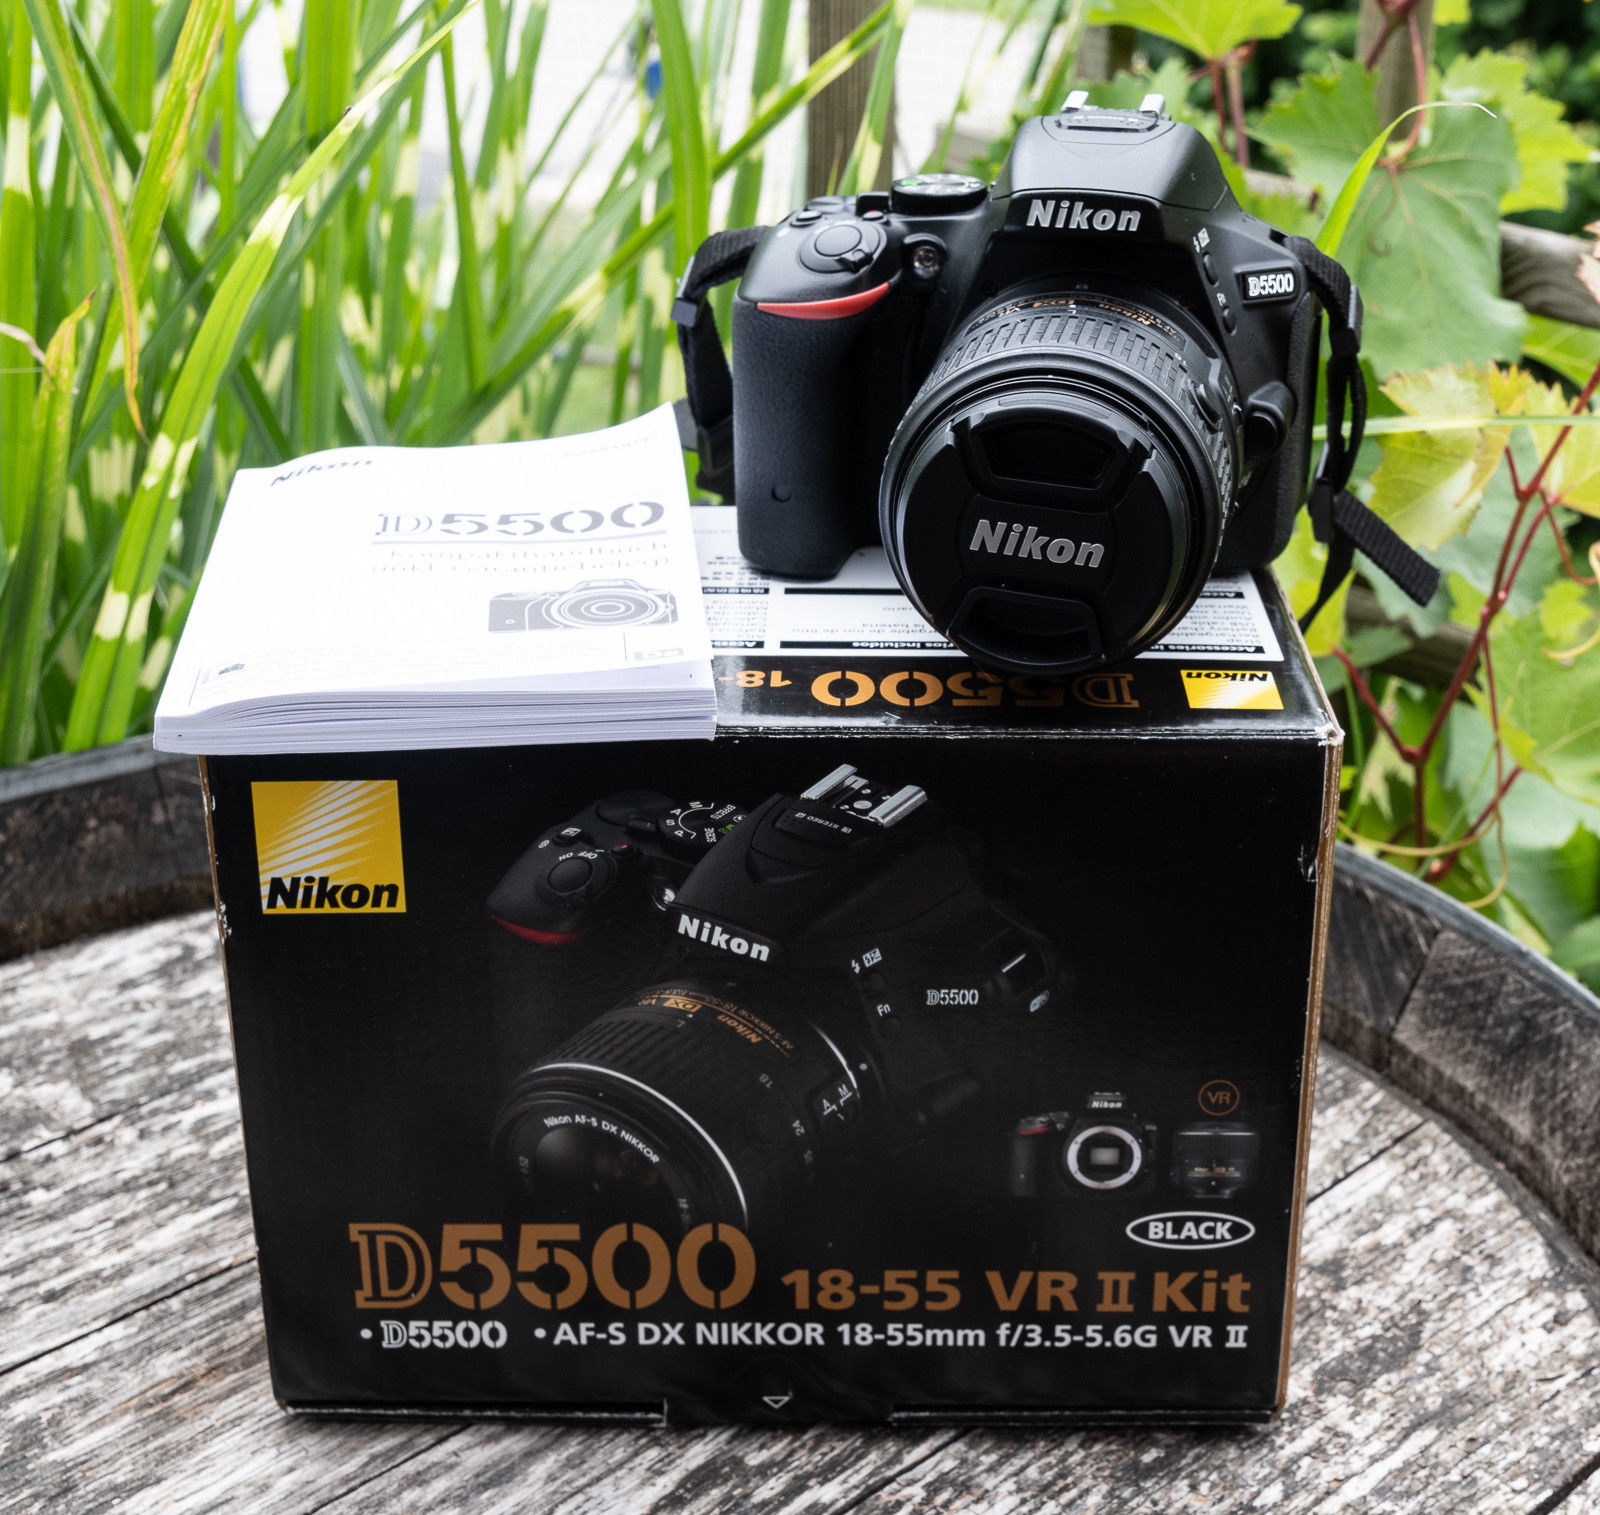 Nikon D5500 Kit inkl. AF-S DX 18-55mm VRII